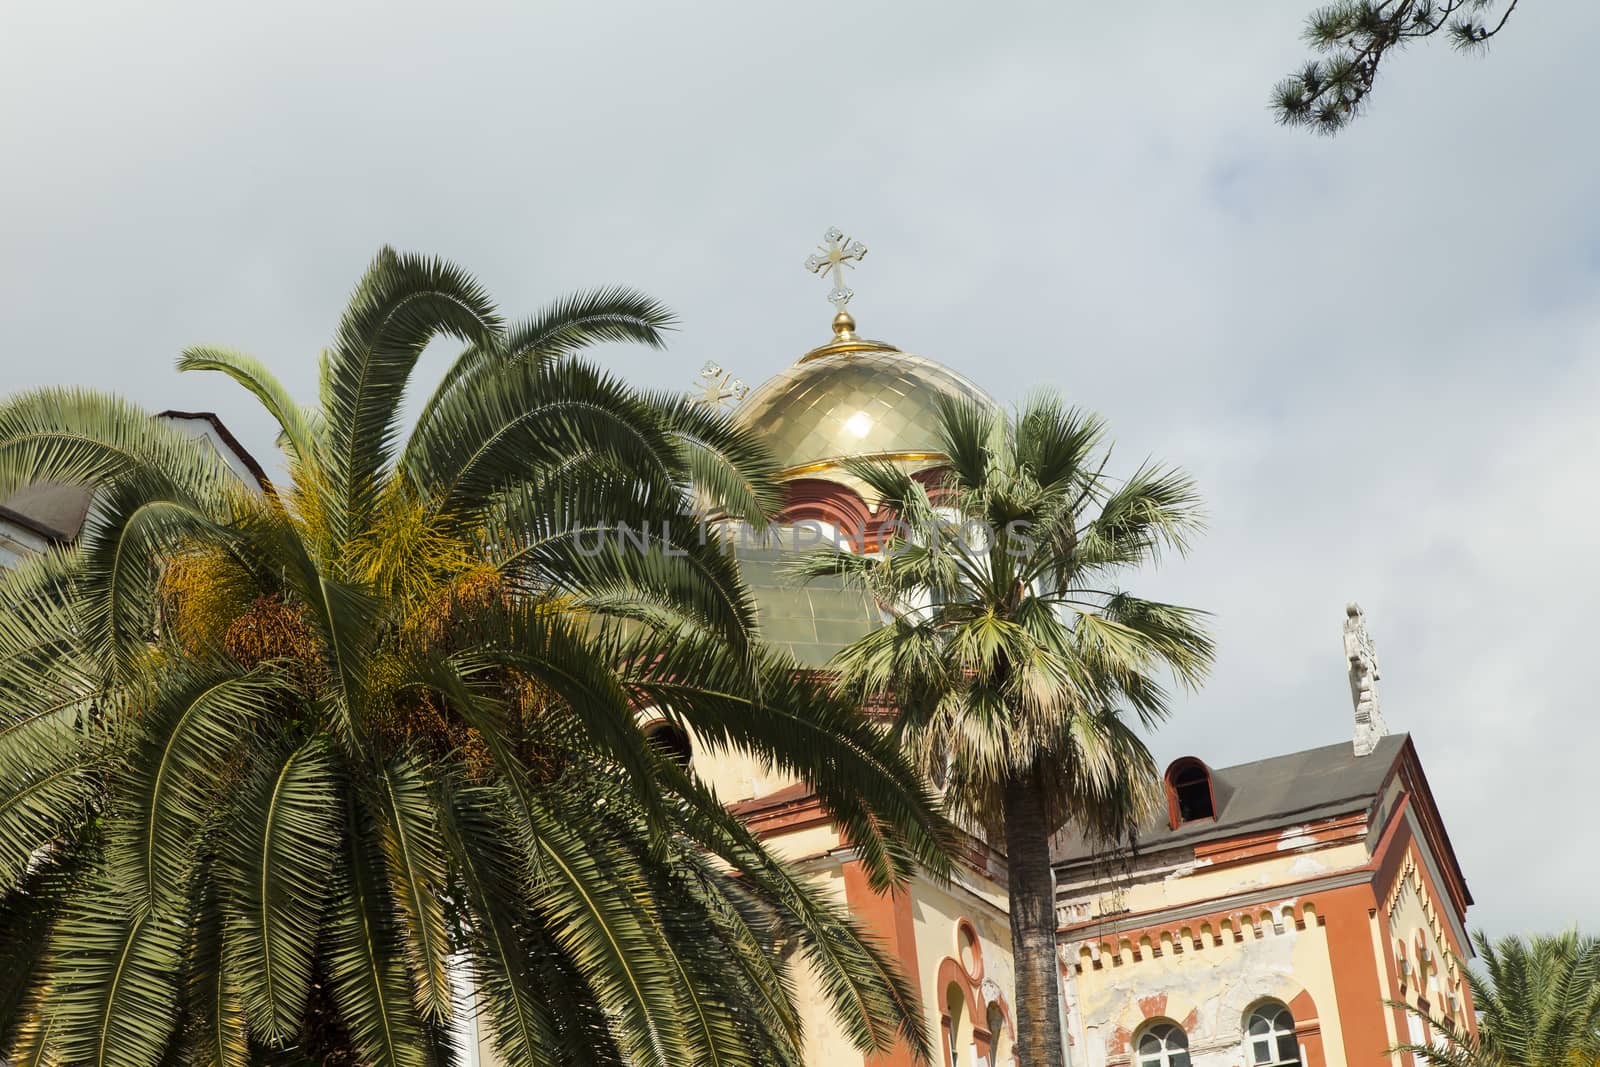 Orthodox church by selezenj